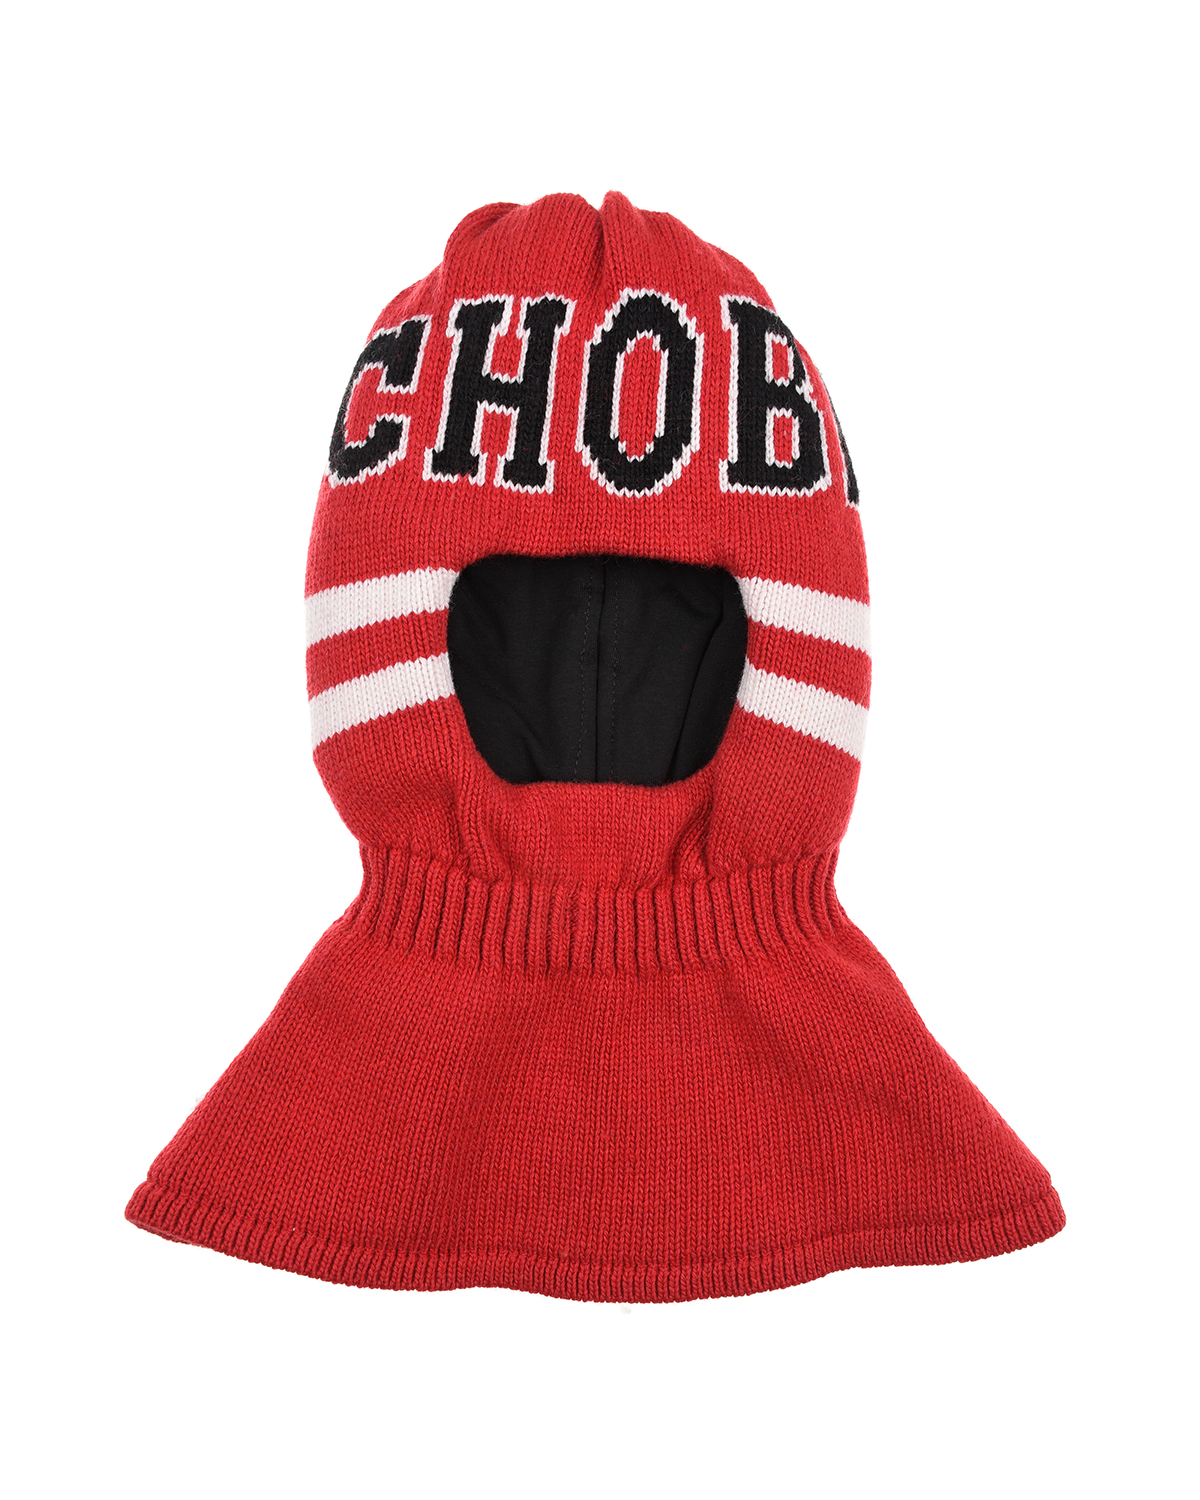 Красная шапка-шлем с белыми полосами Chobi детская